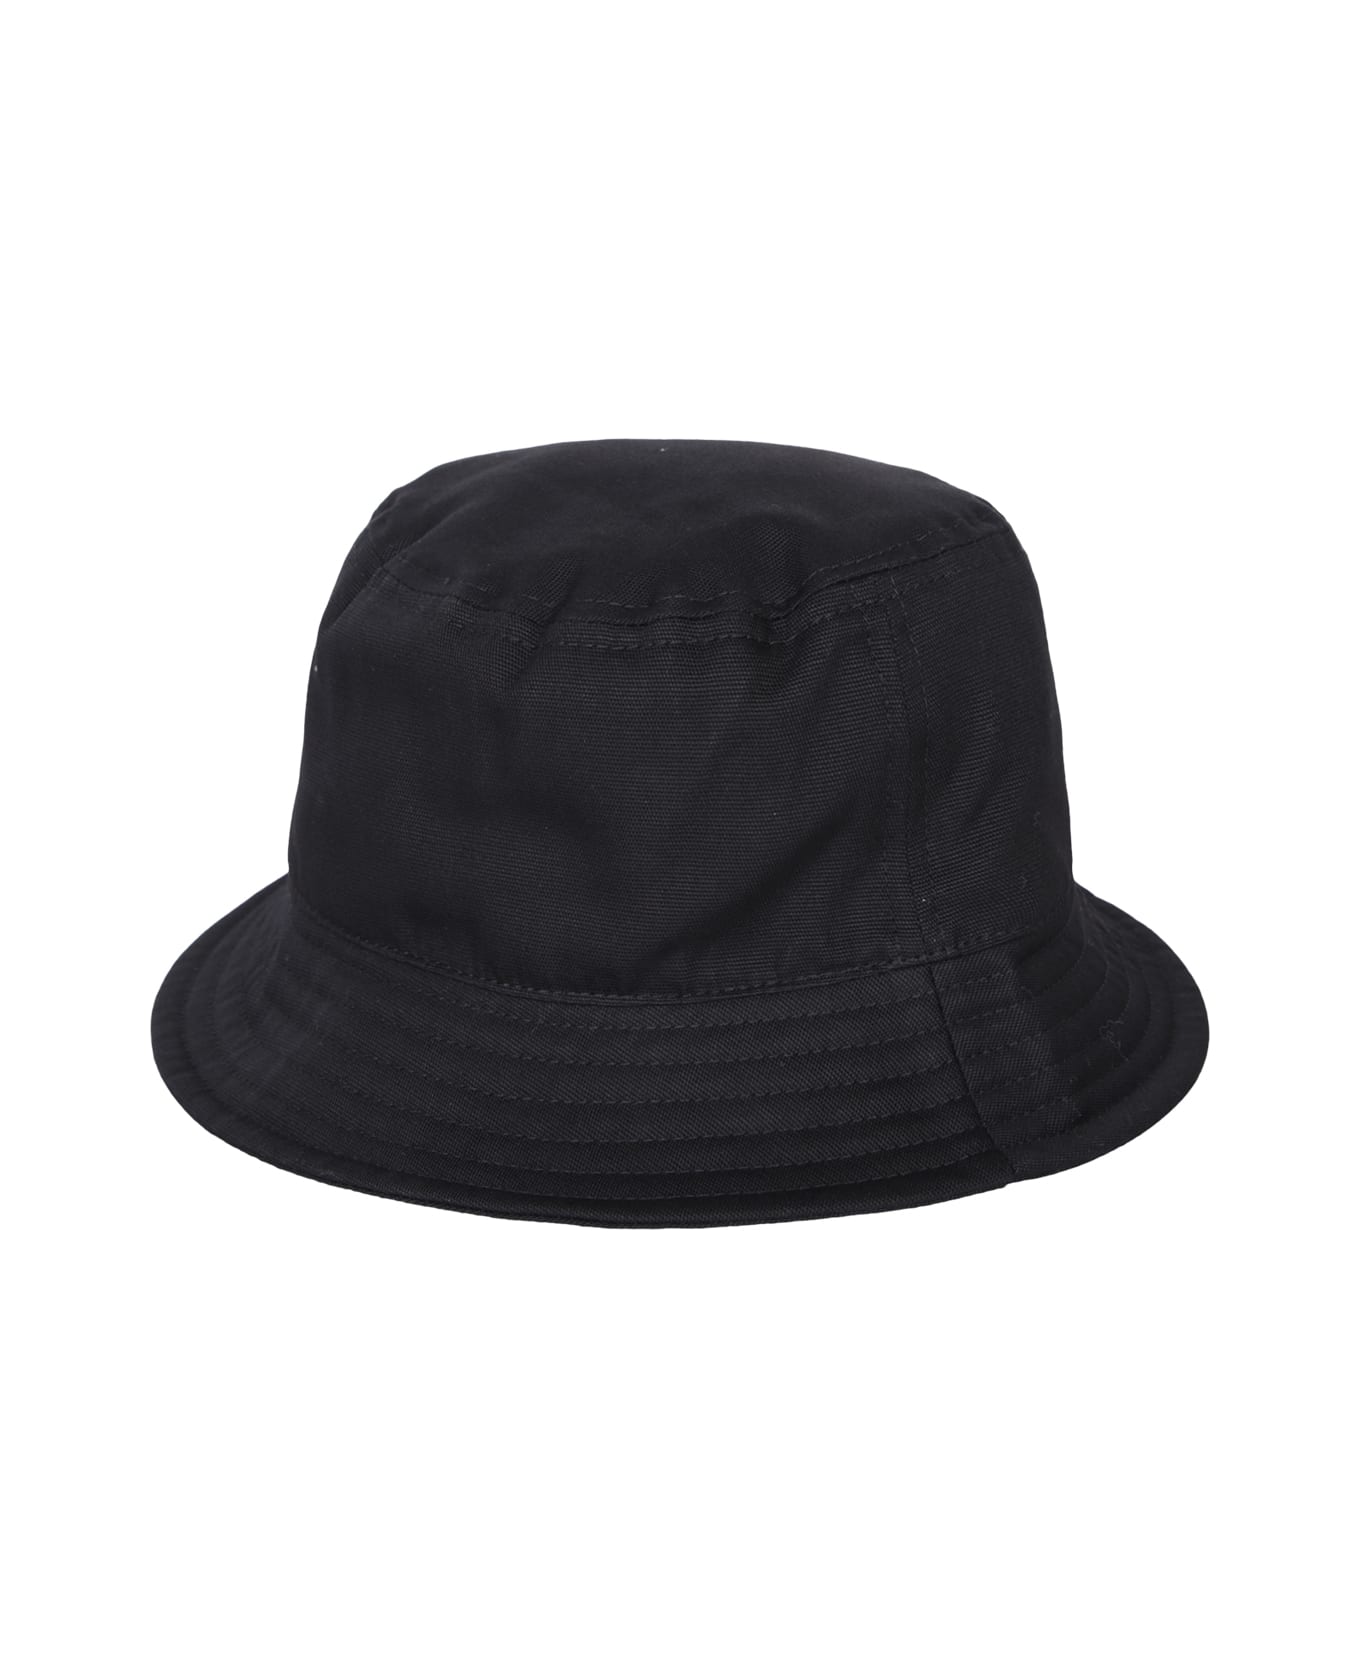 Vivienne Westwood Black Bucket Hat - Black